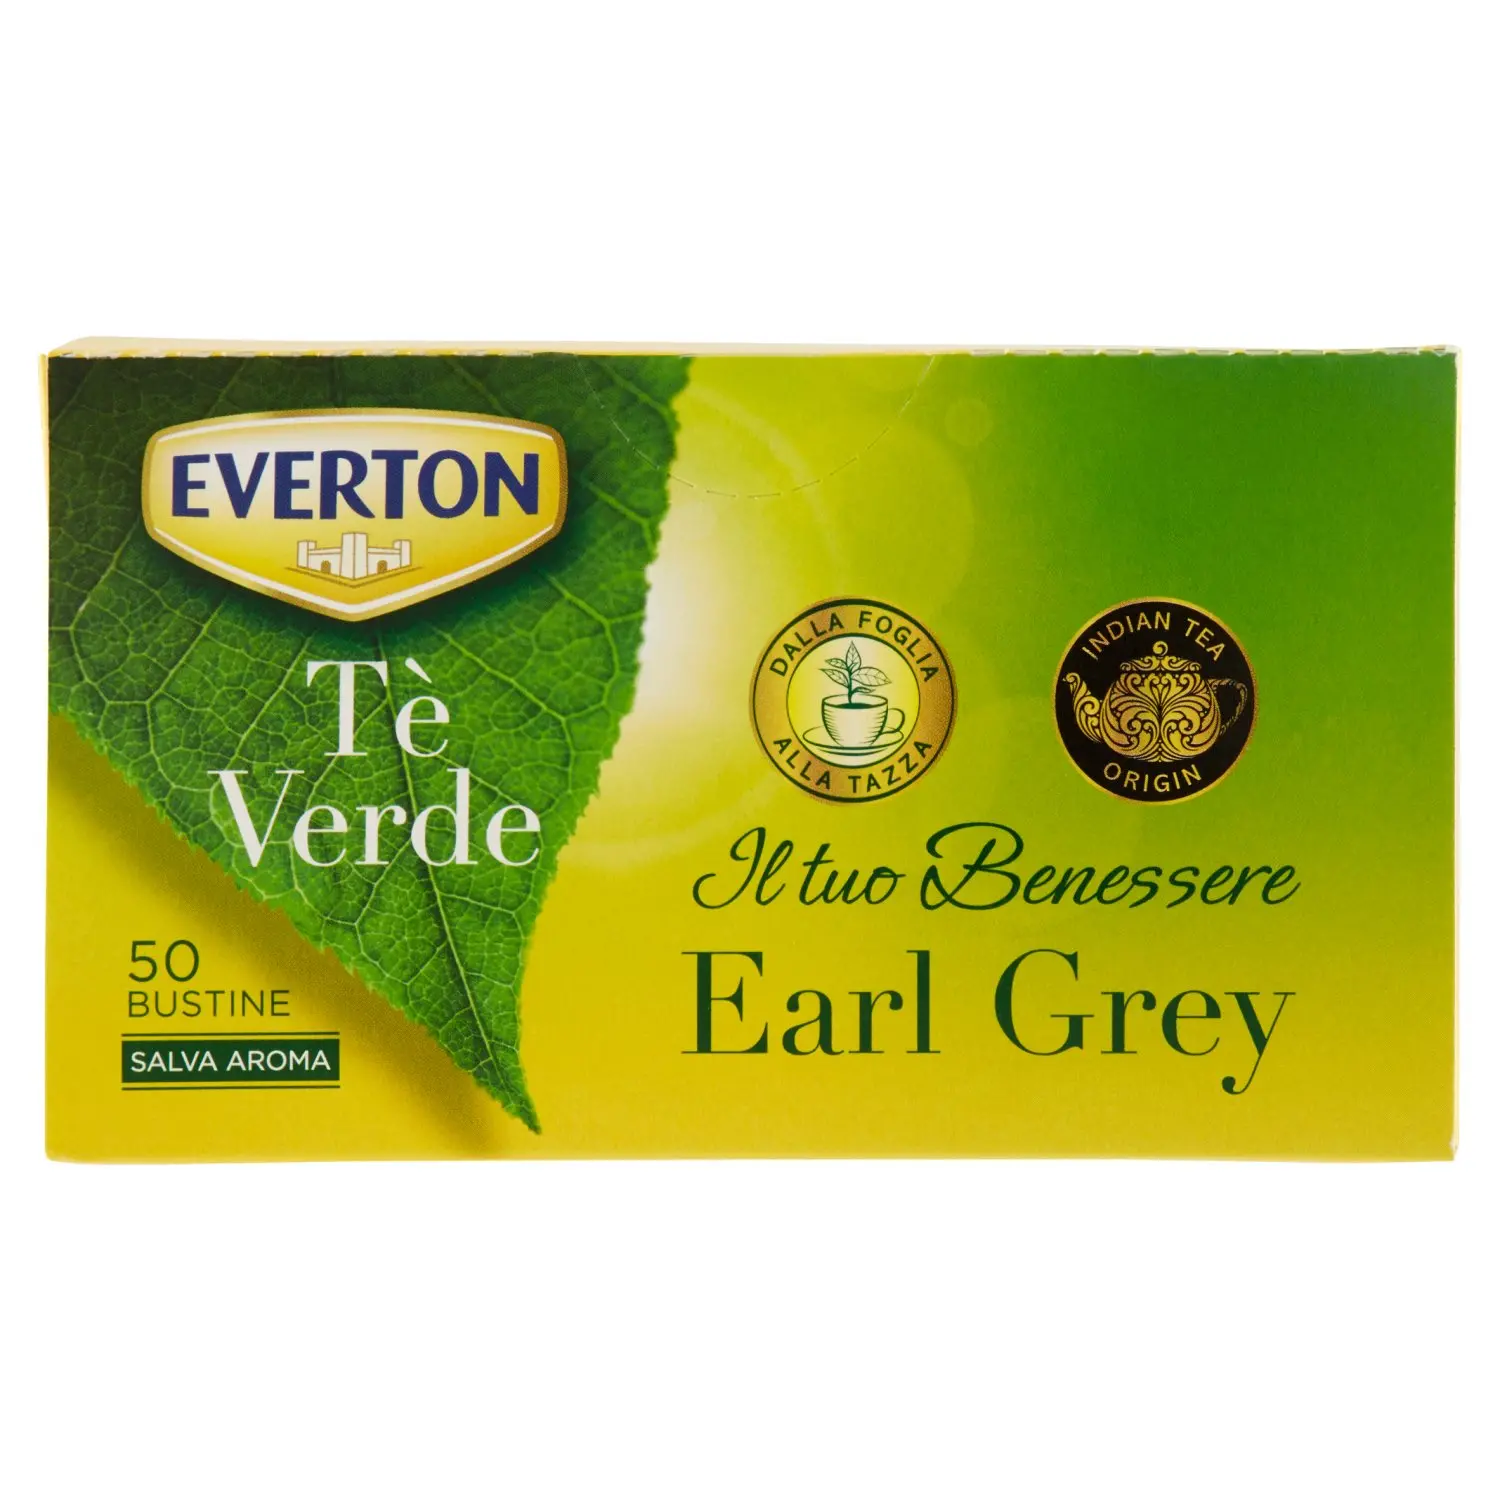 Everton Tè Verde Earl Grey 50 x 1,7 g